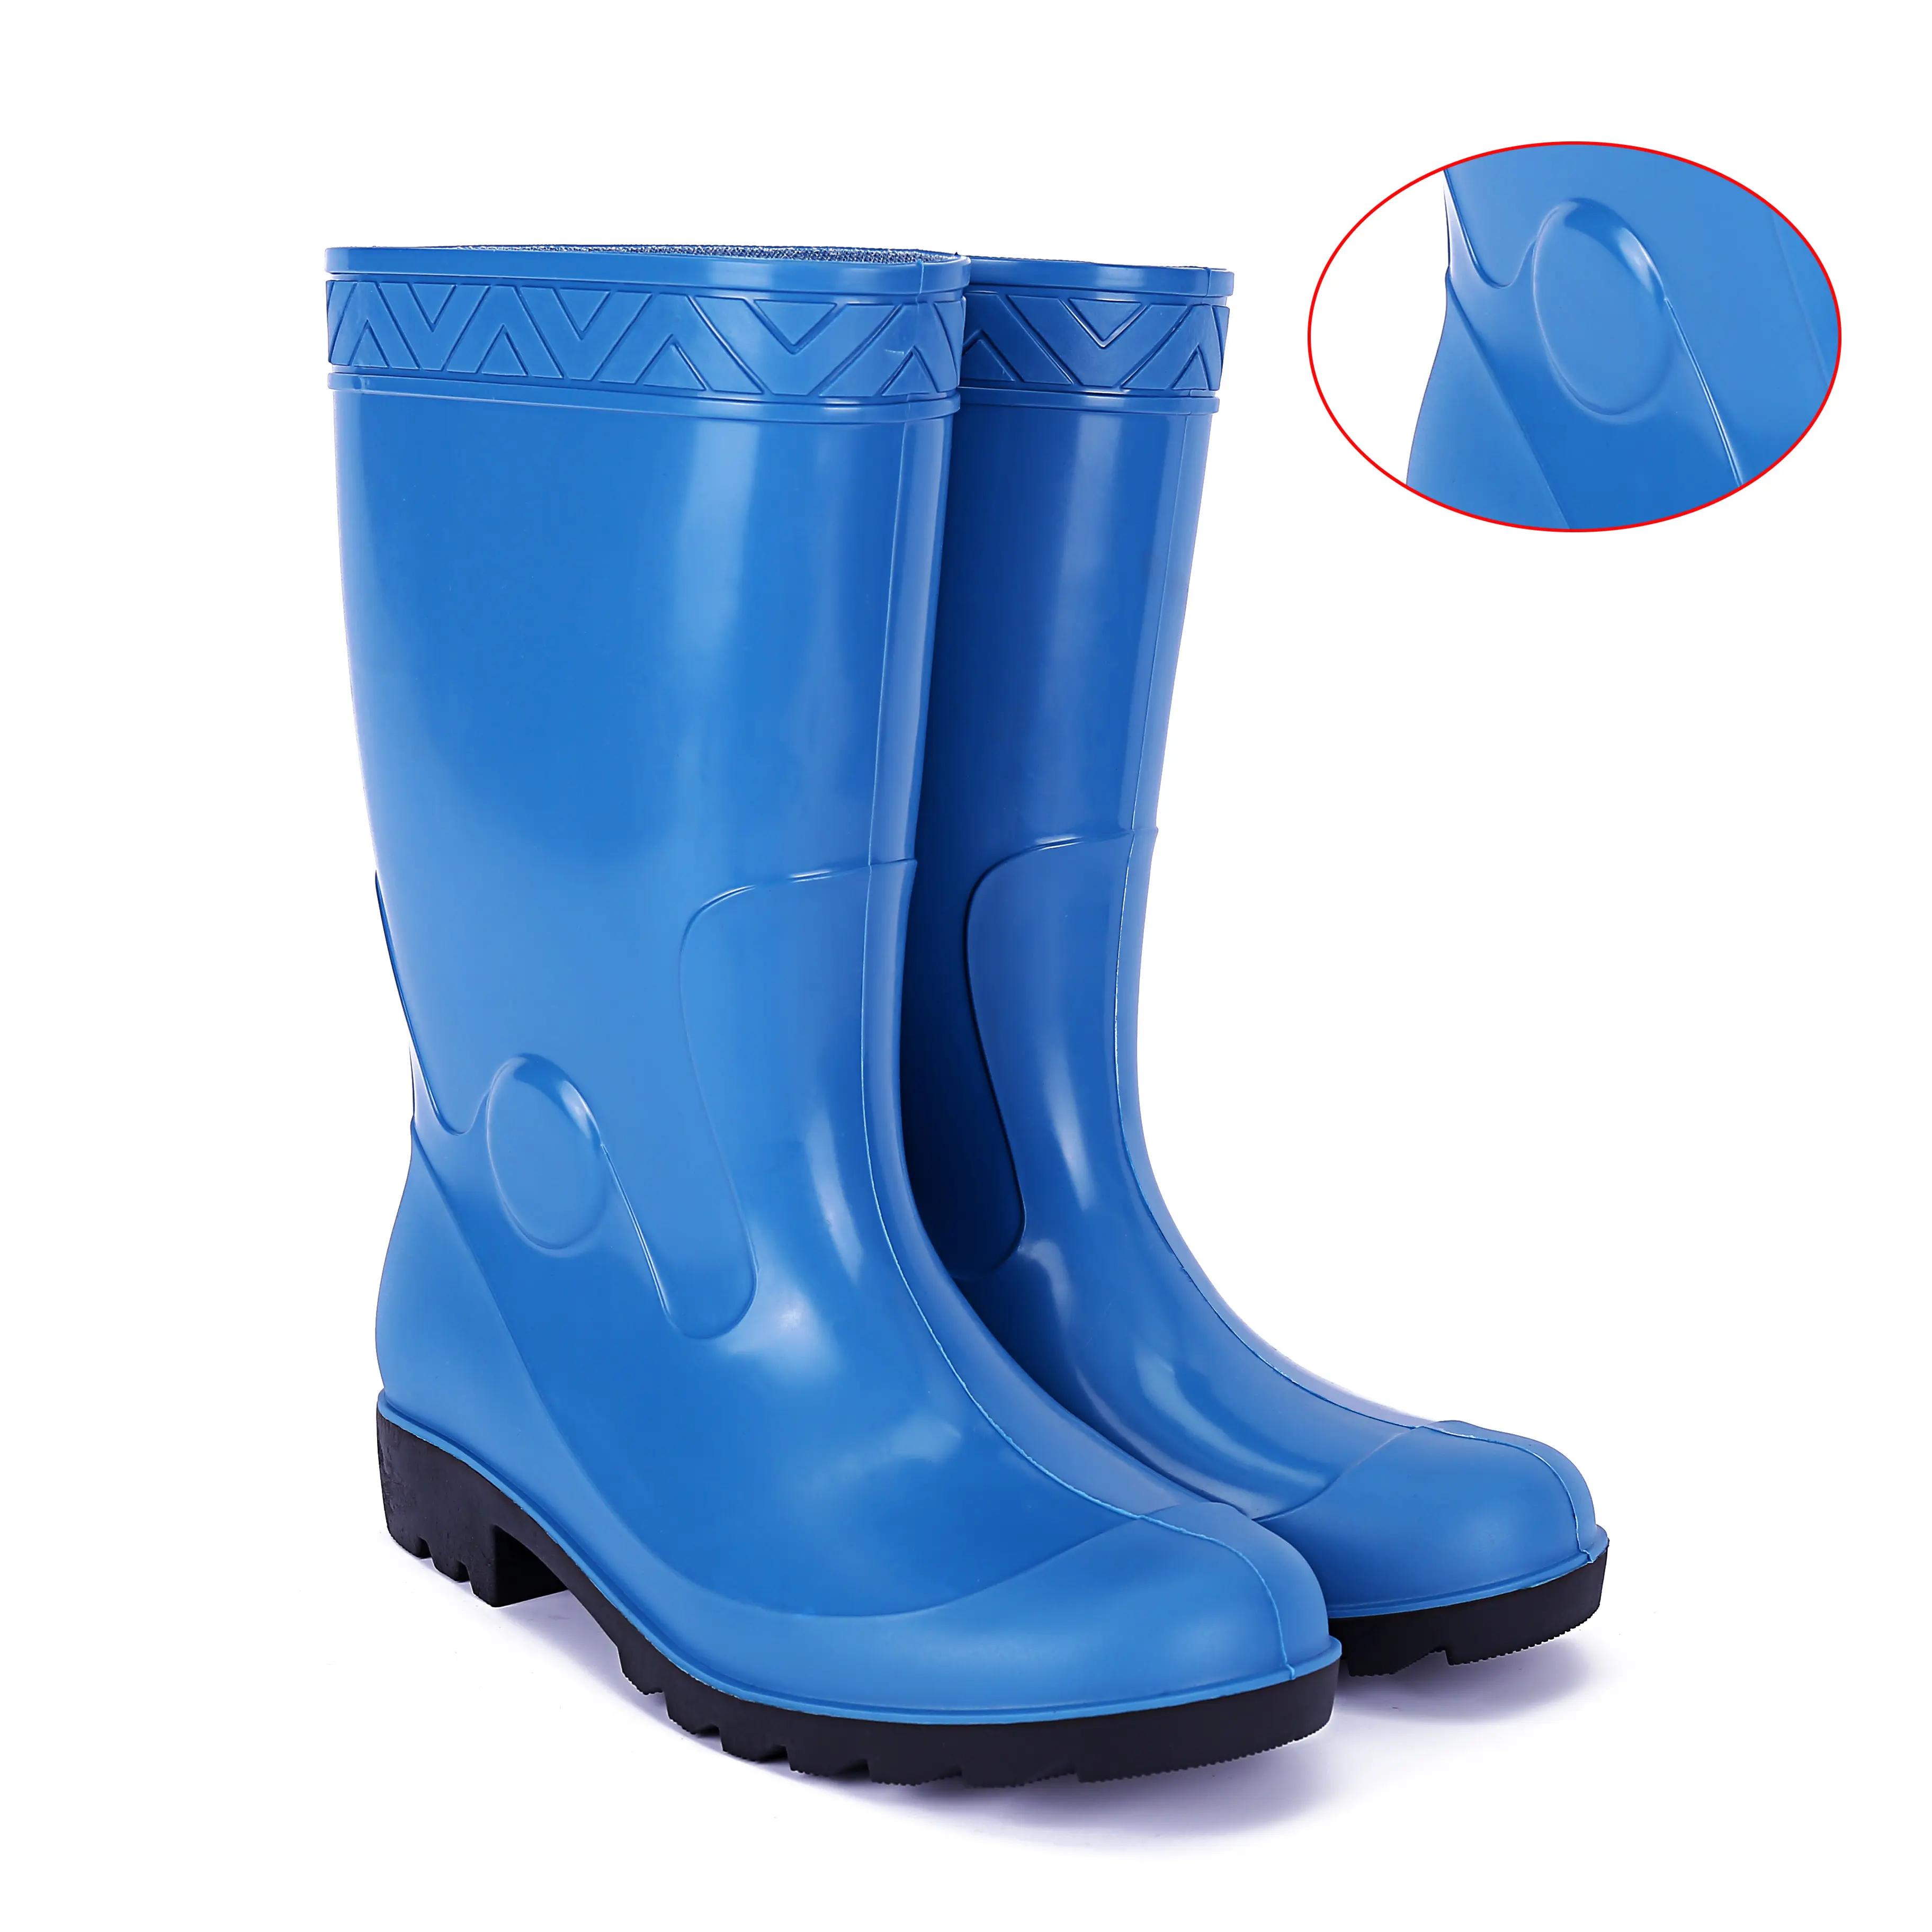 Botas de lluvia largas de Pvc, botas de goma impermeables de fábrica, populares, baratas